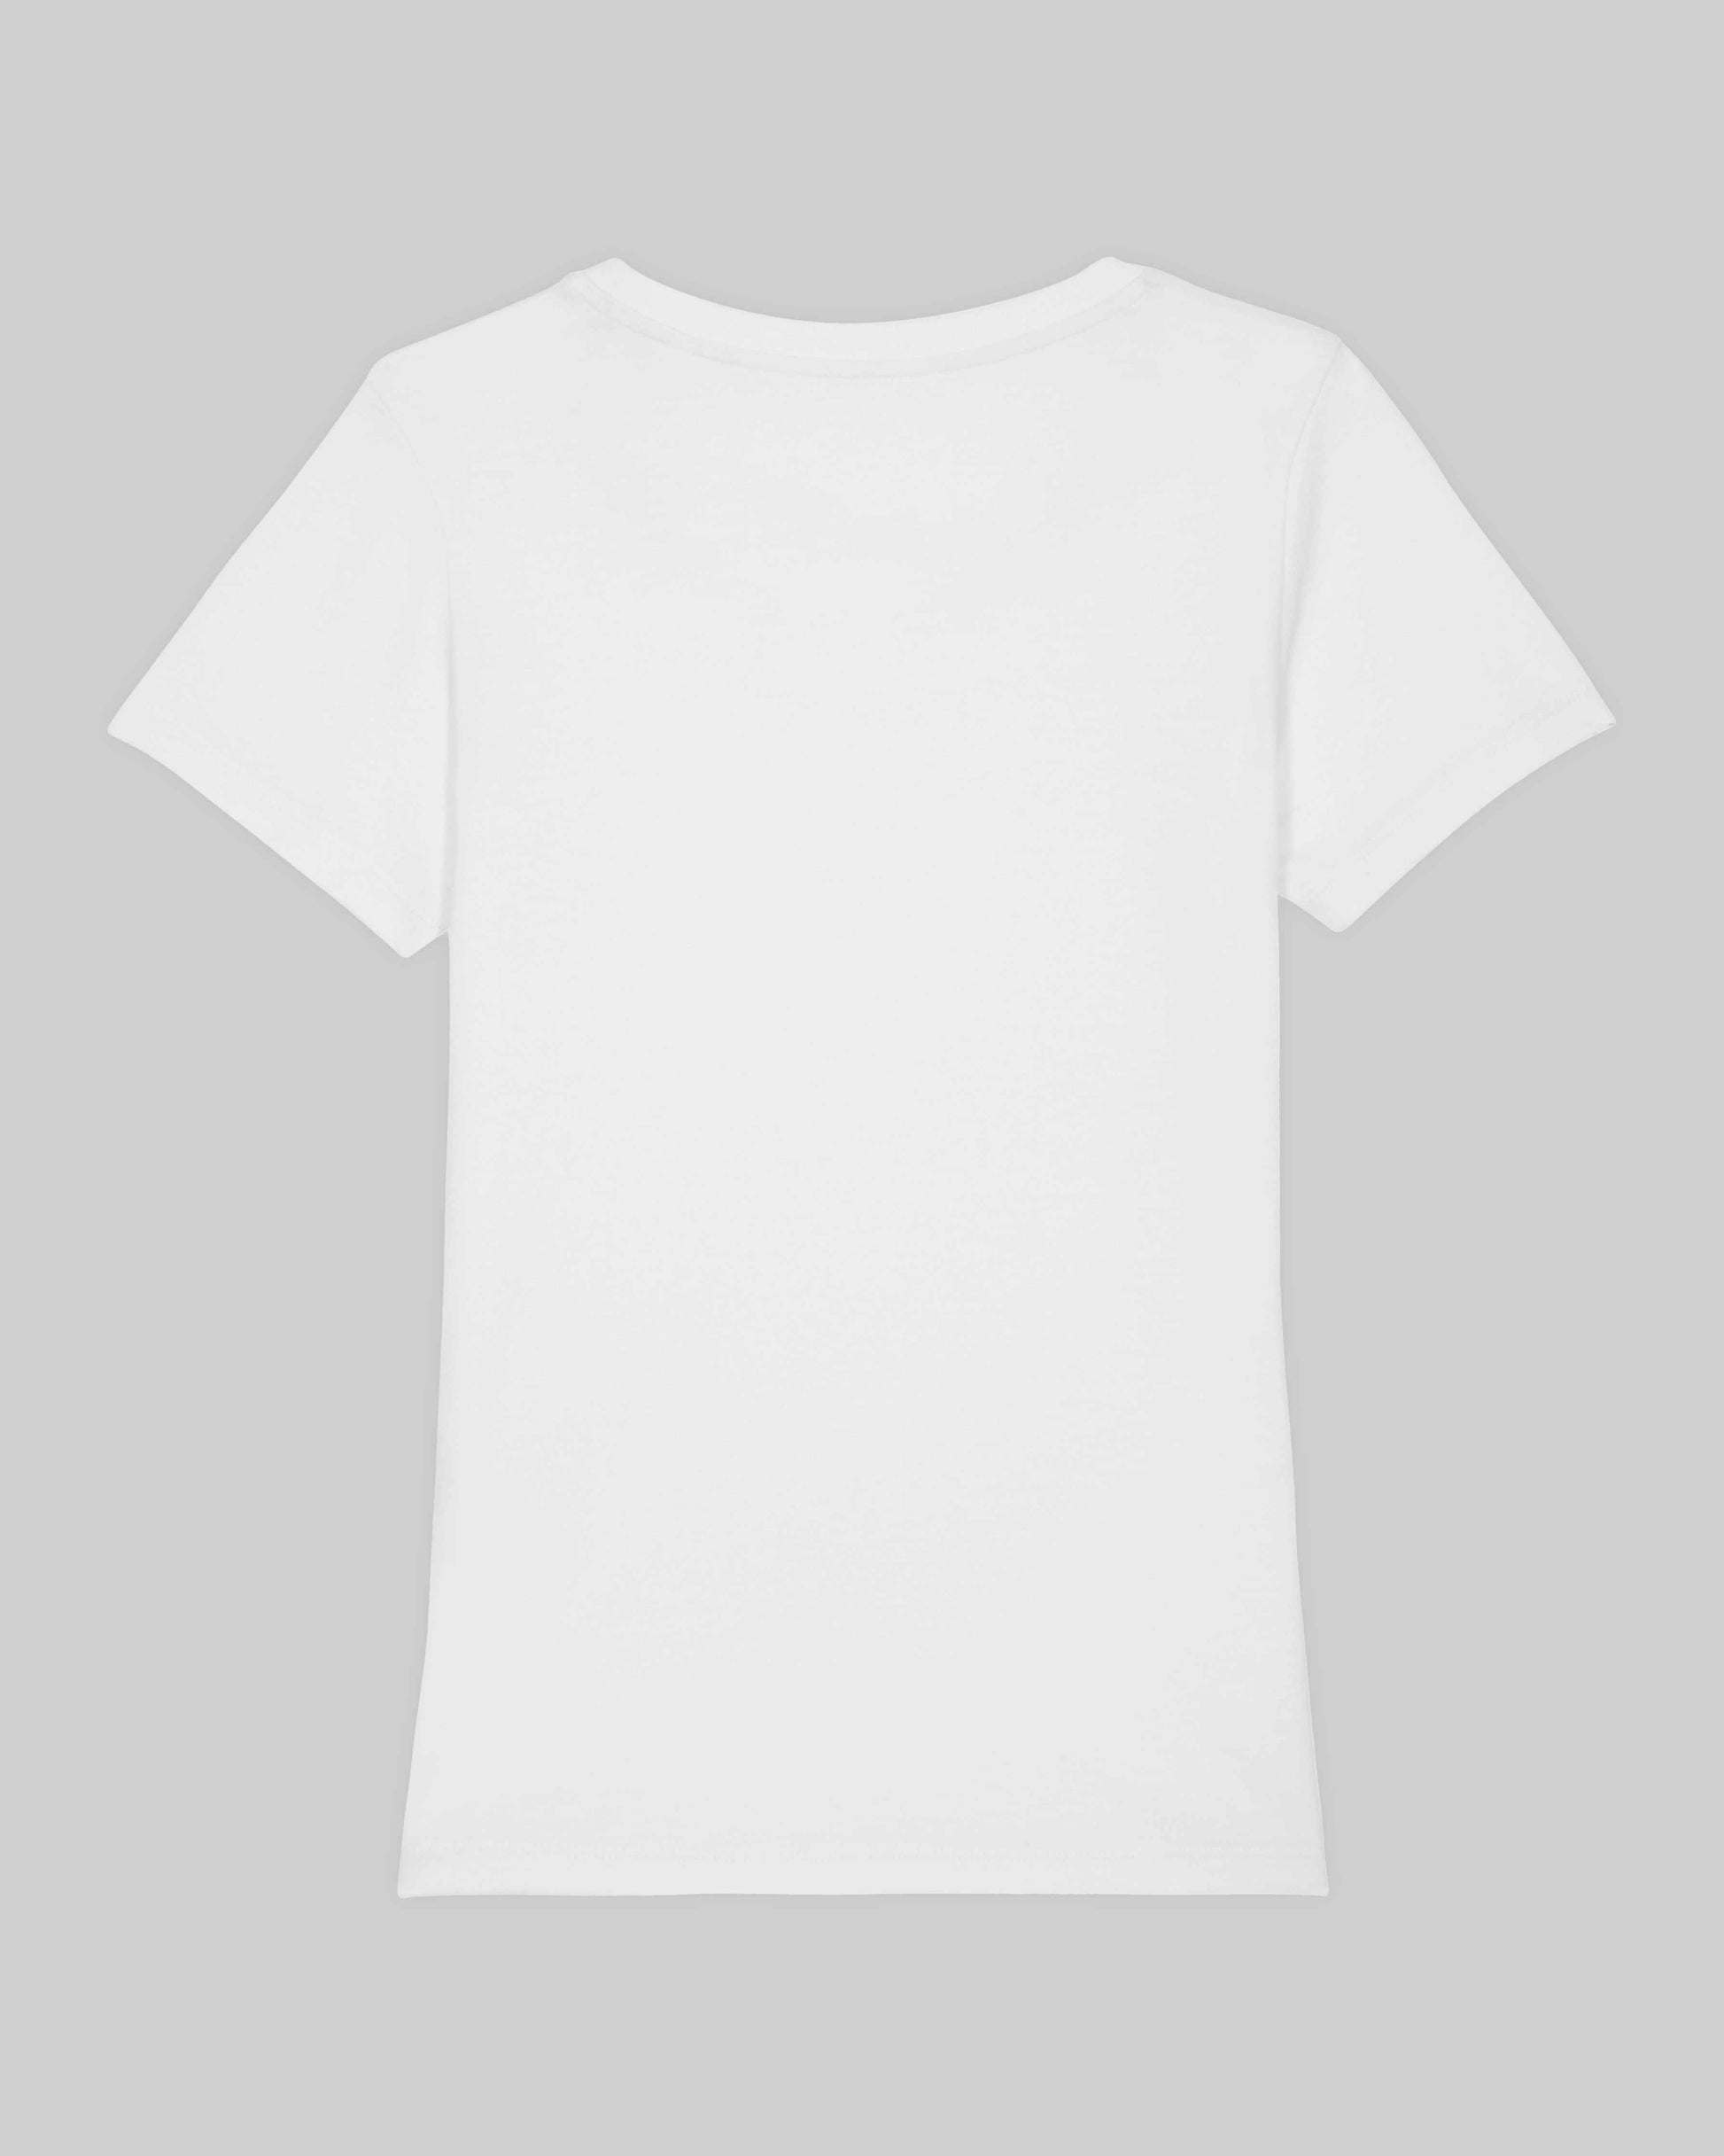 EINHORST® Organic Shirt tailliert in "Weiß" mit dem Motiv "queer Regenbogen" in der Kombination schwarzer Regenbogen mit schwarzer Schrift, Bild von Shirt von hinten